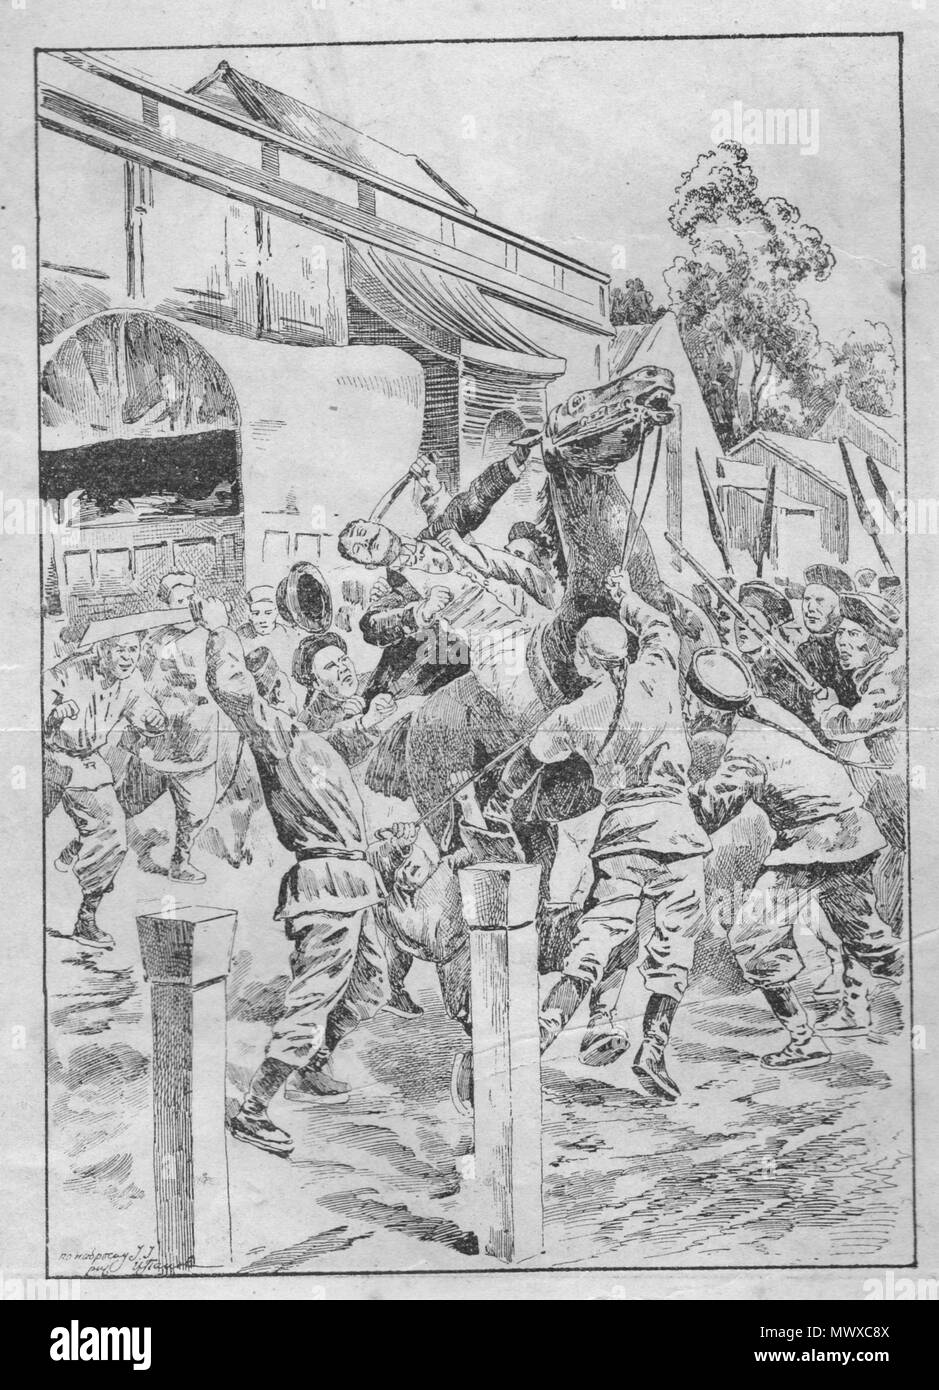 La Chine. La rébellion des boxeurs. Attaque sur l'ambassadeur. Vintage engraved illustration. Publié dans la revue en 1900. Banque D'Images